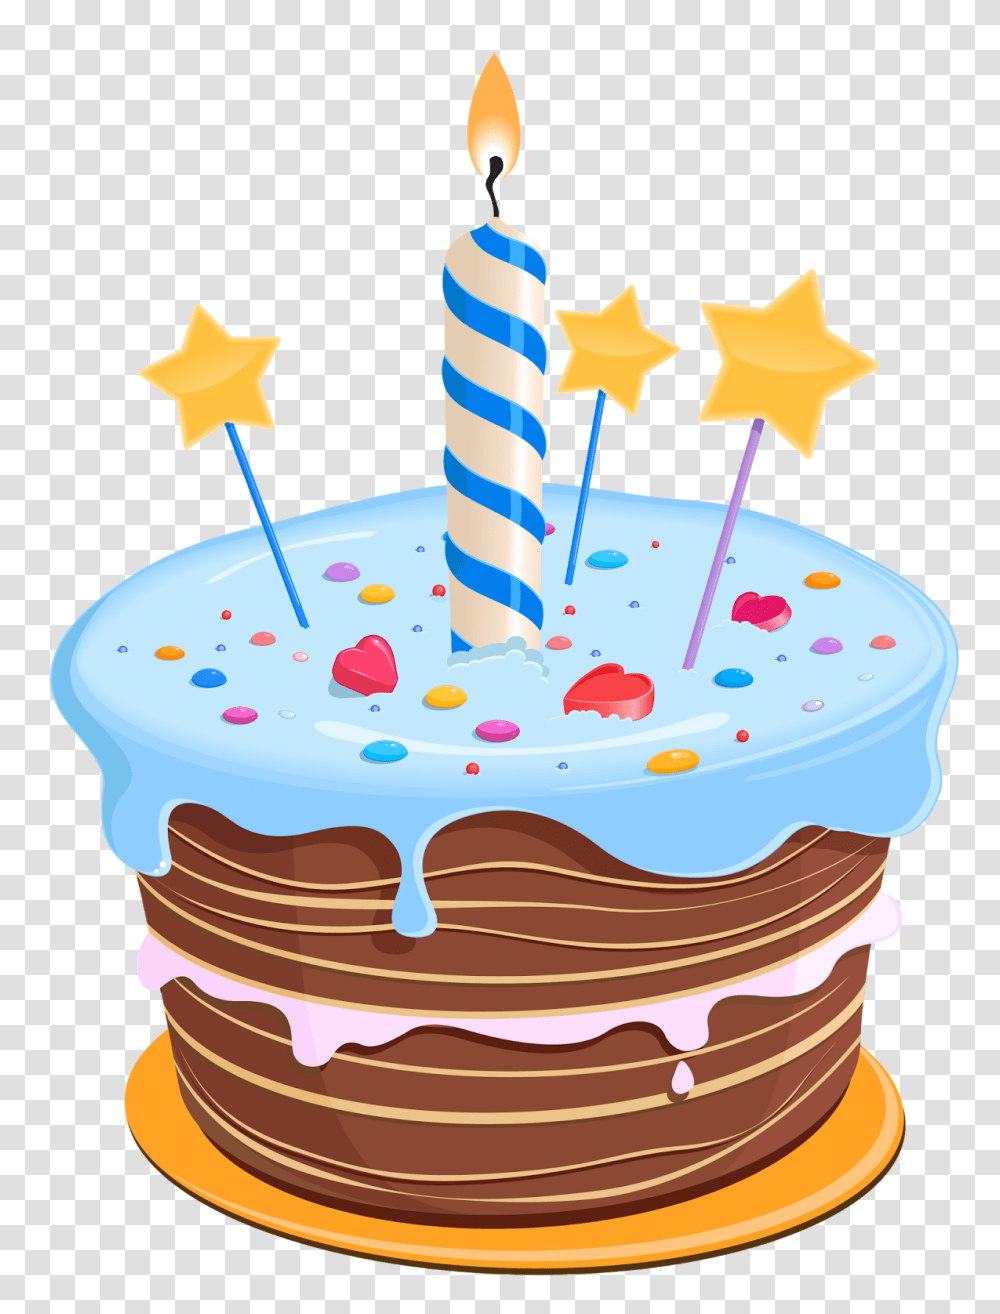 Immagini Torta Di Compleanno Illustrazioni E Clip Art, Birthday Cake, Dessert, Food, Sweets Transparent Png